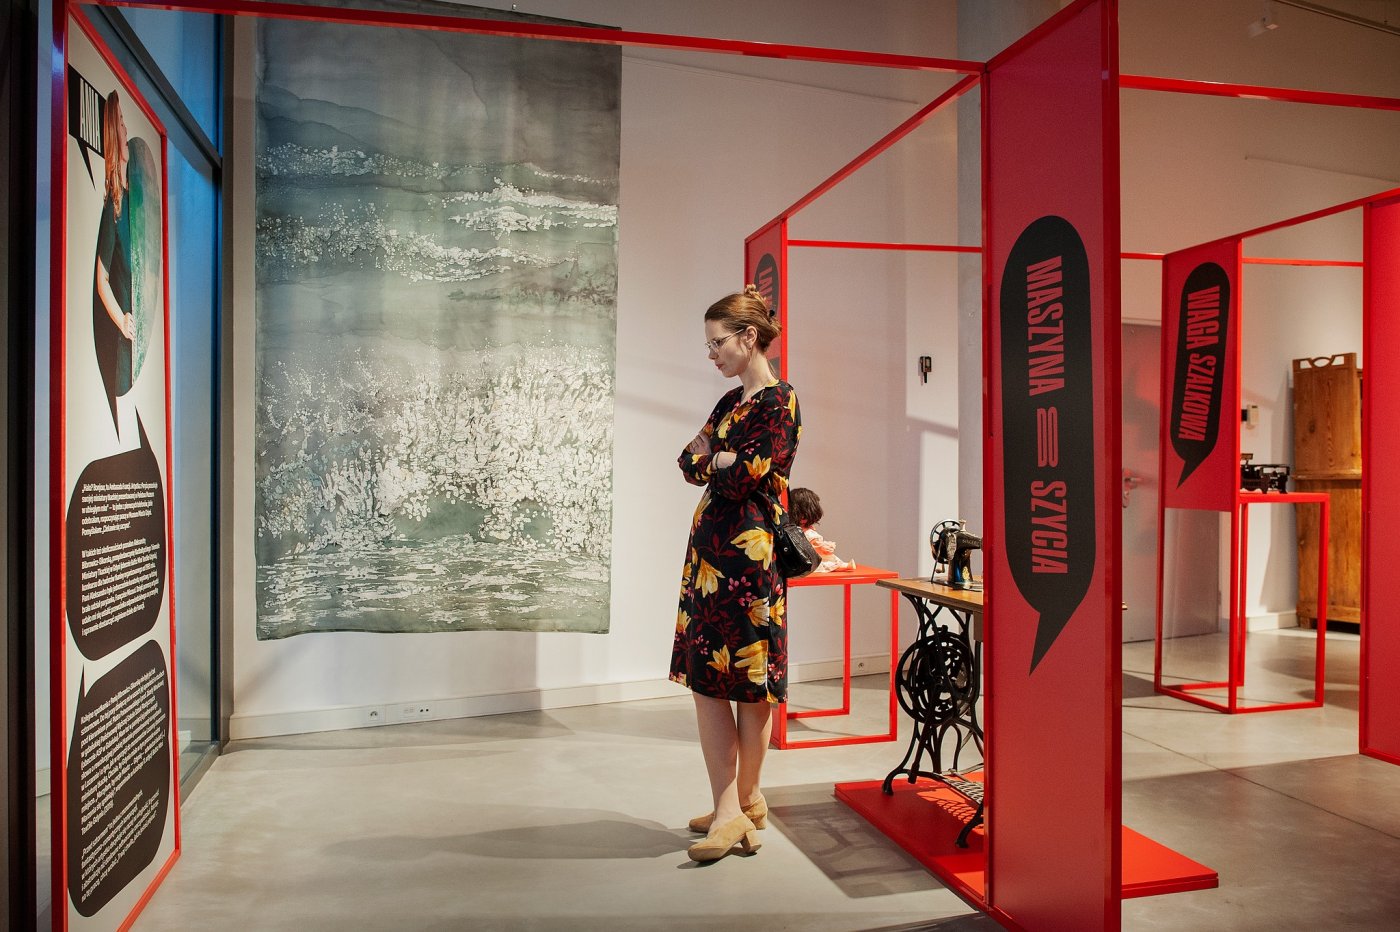 Kobieta w sukience, która ogląda wystawę „My o rzeczach \ rzeczy o nas” w Muzeum Miasta Gdyni. W tle stoją eksponaty: maszyna do szycia i lalka